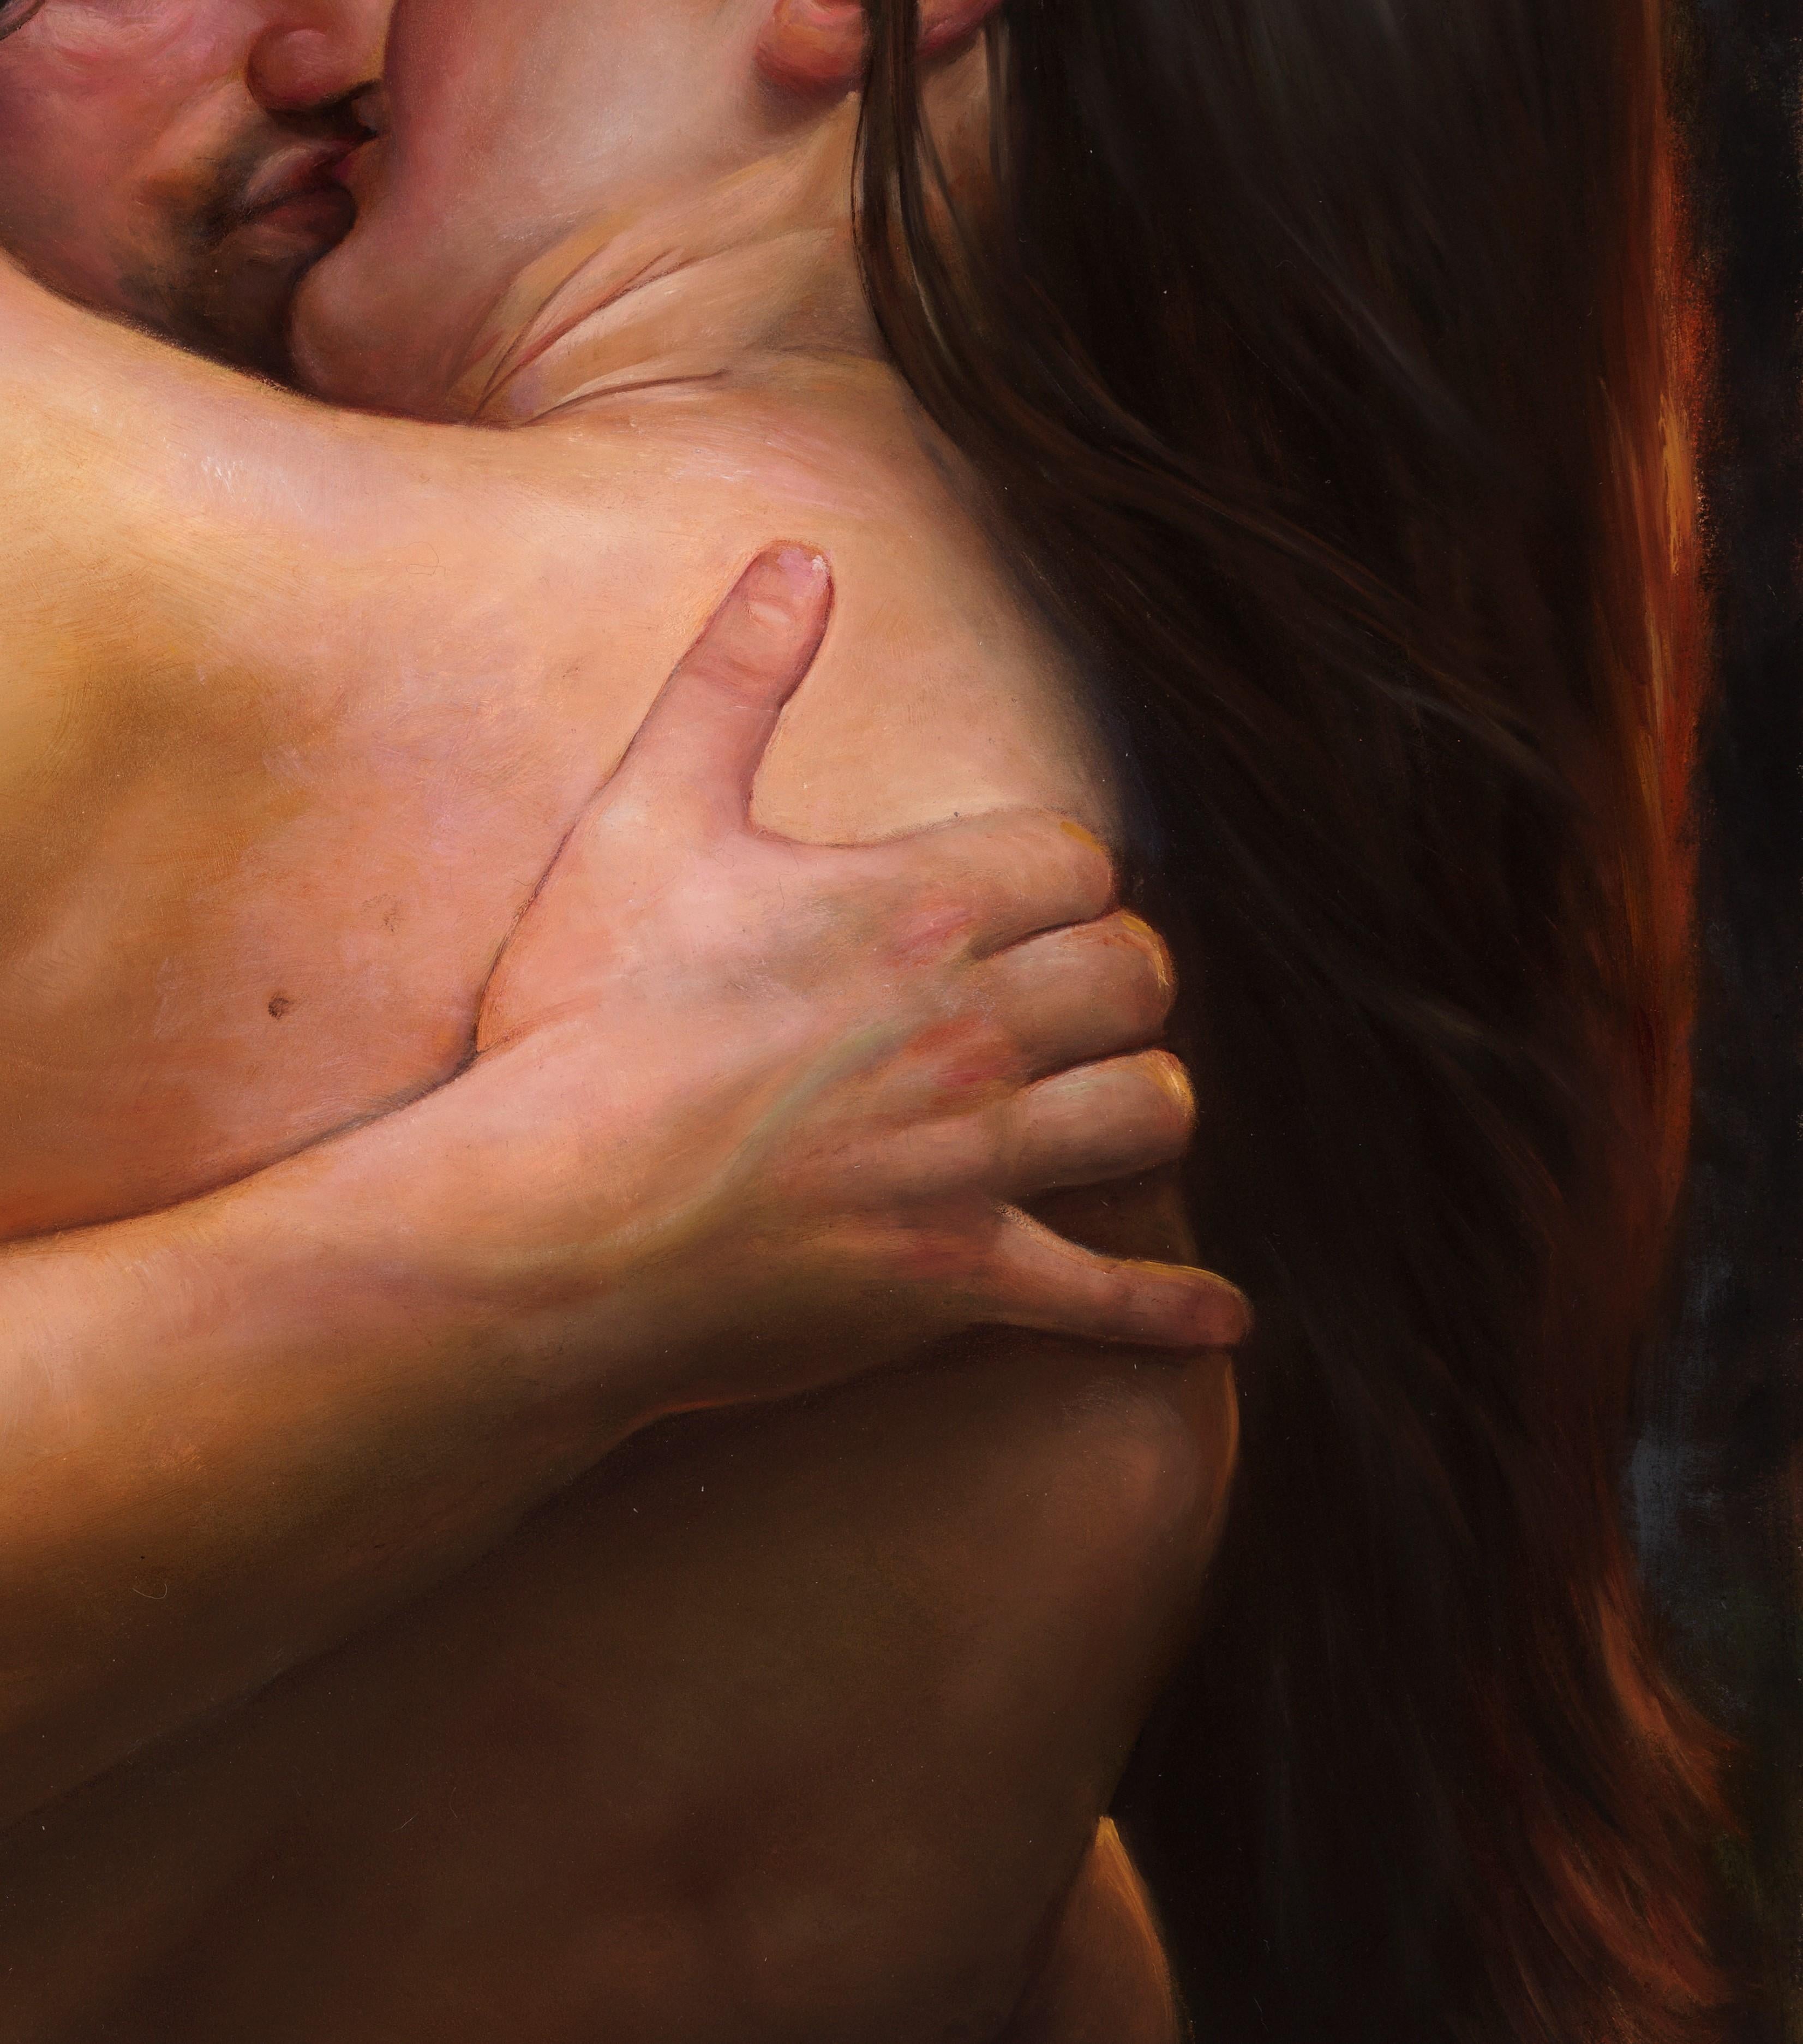 Desire - Lovers nus enlacés dans une bague passionnée, huile sur papier sur toile - Contemporain Painting par Bruno Surdo